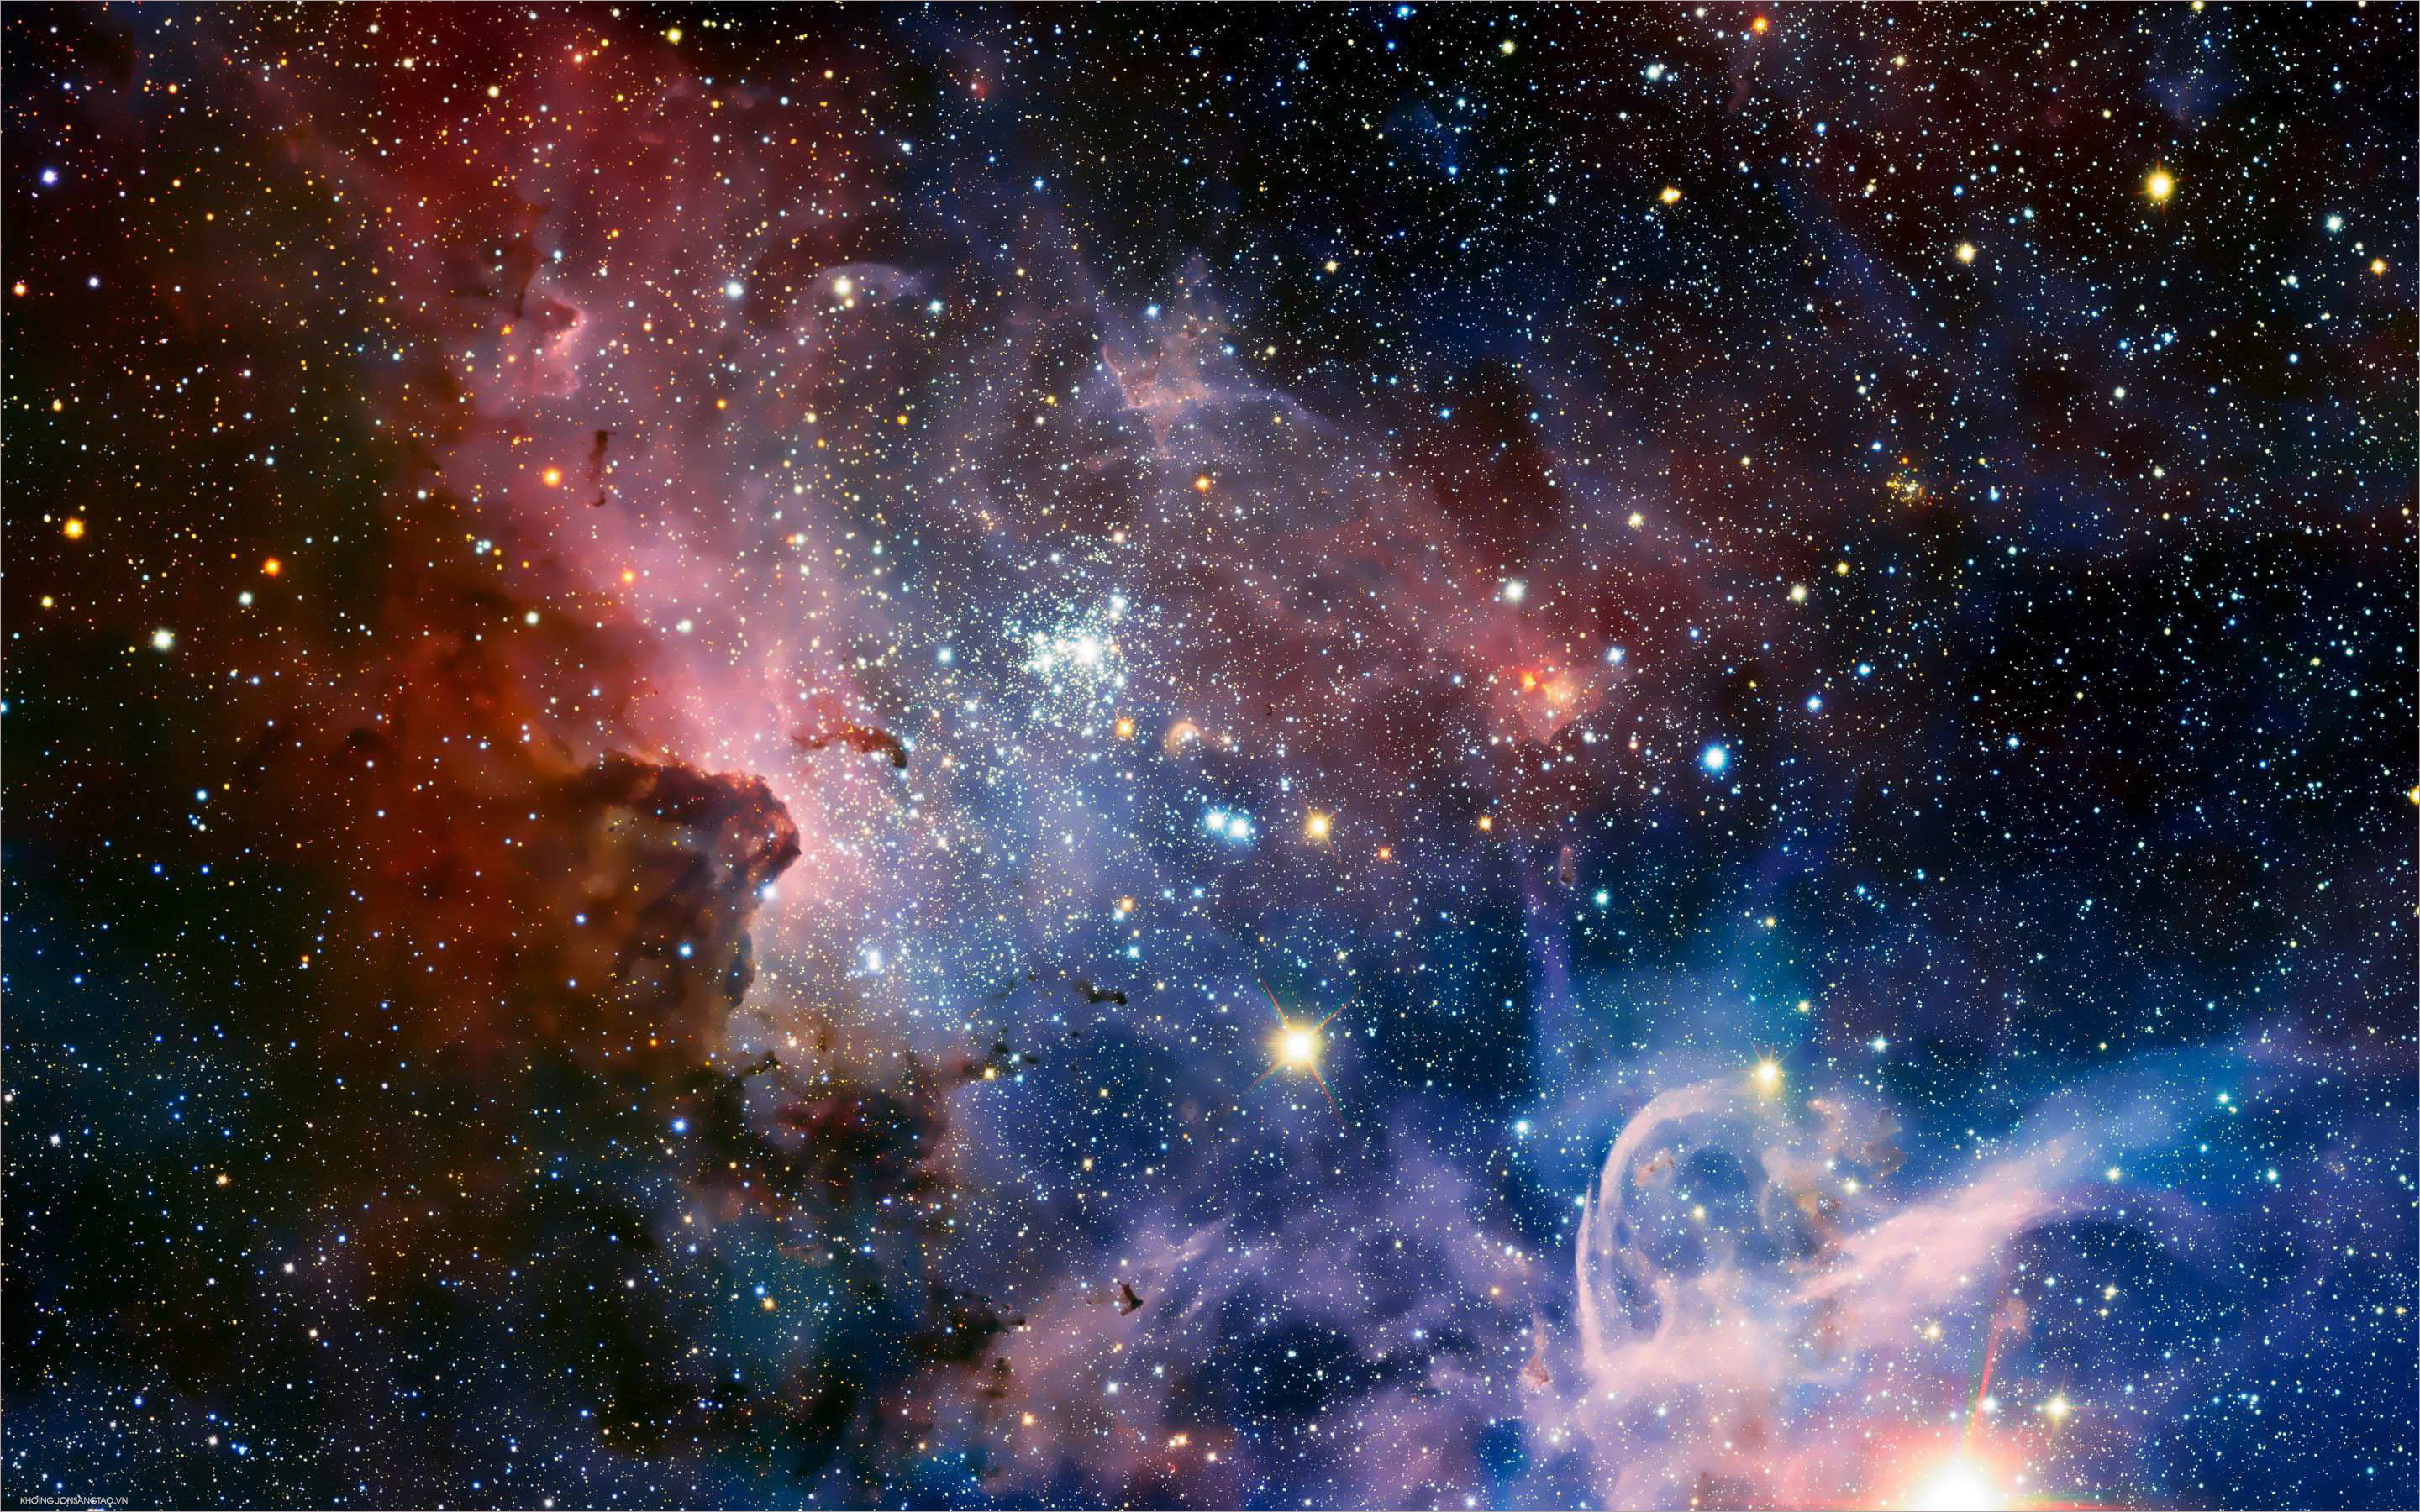 Thiên Hà: Hãy cùng đắm mình trong không gian bao la, vô tận của Thiên Hà và tìm hiểu về chúng ta trong bầu trời vô tận. Với những hình ảnh tuyệt đẹp được chụp từ thiên văn viện, Thiên Hà chắc chắn sẽ khiến bạn ngỡ ngàng và kinh ngạc.